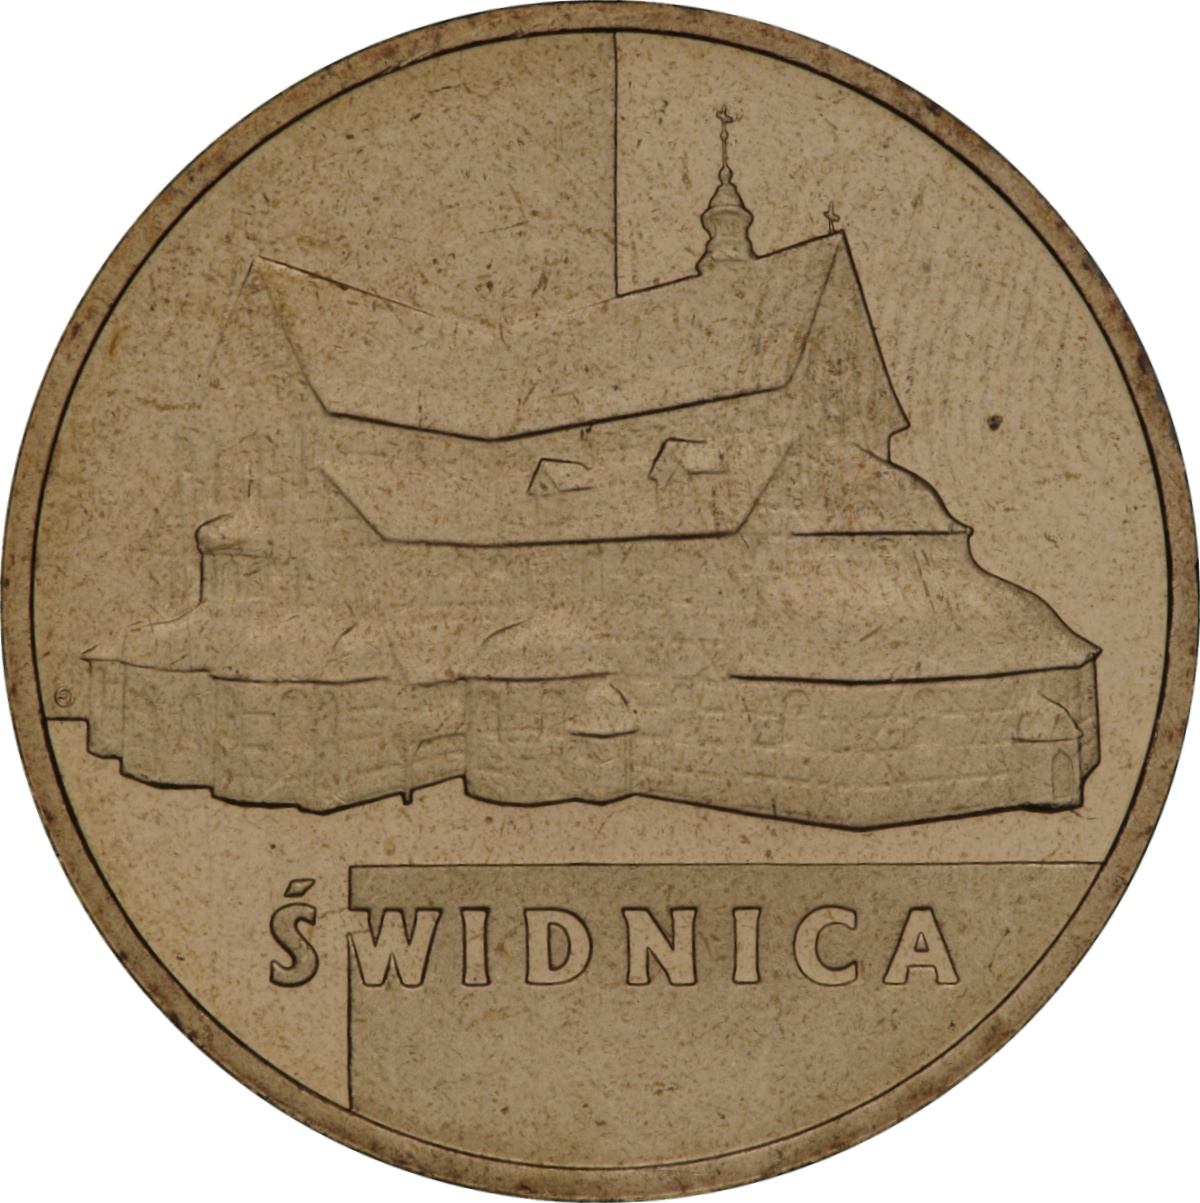 2zl-swidnica-rewers-monety